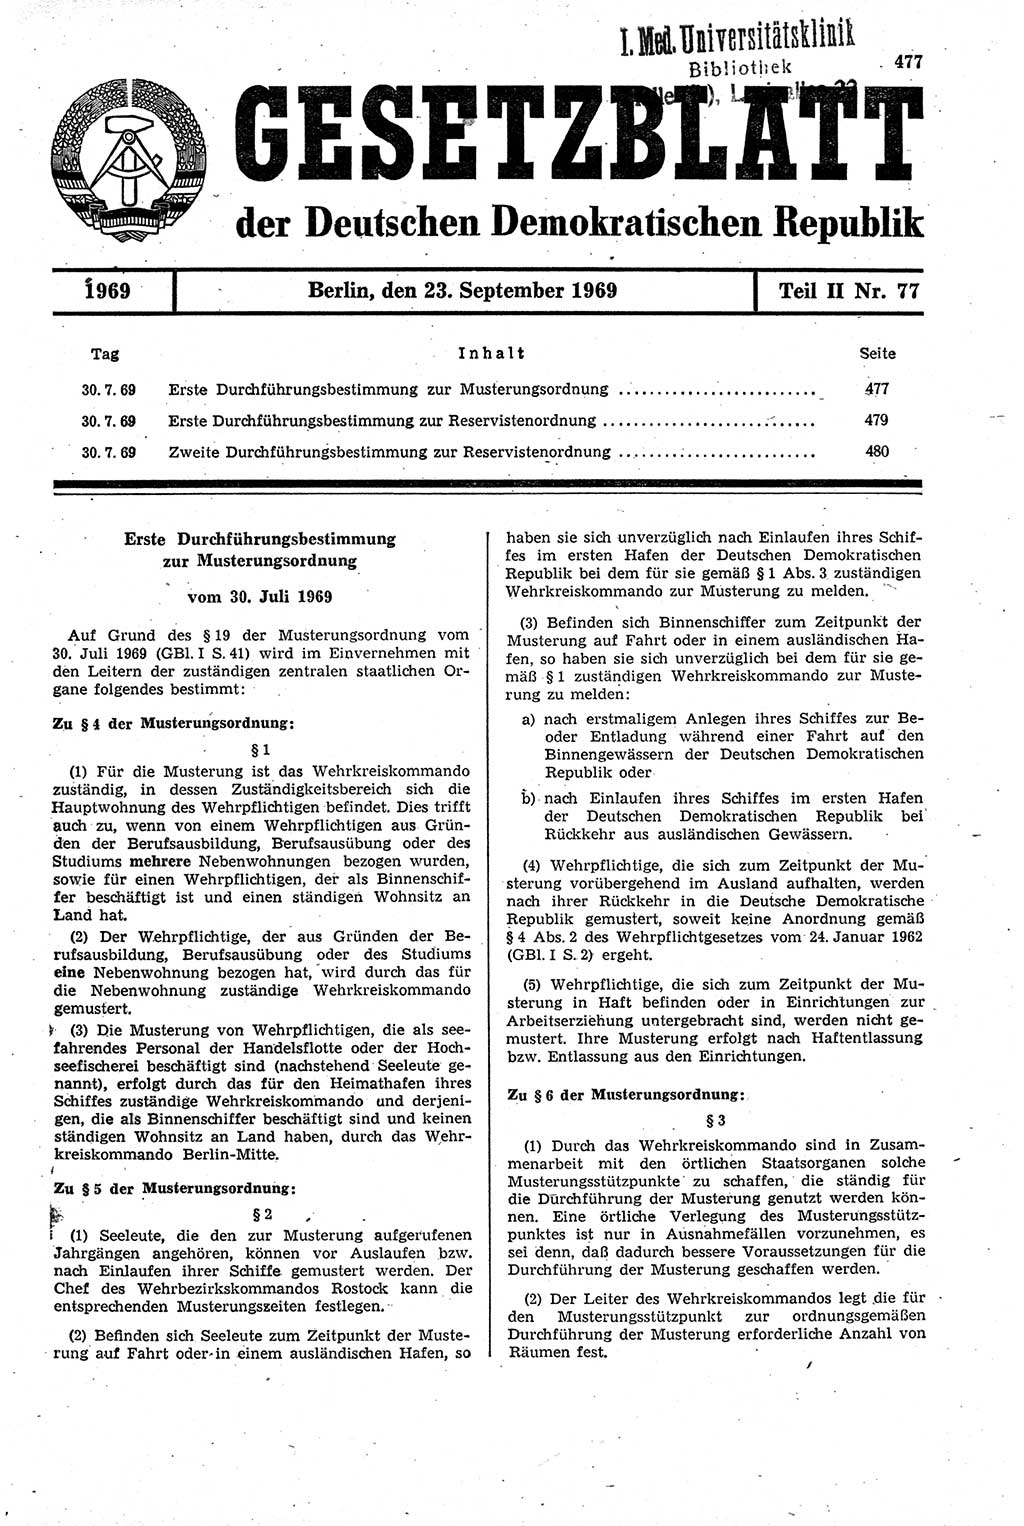 Gesetzblatt (GBl.) der Deutschen Demokratischen Republik (DDR) Teil ⅠⅠ 1969, Seite 477 (GBl. DDR ⅠⅠ 1969, S. 477)